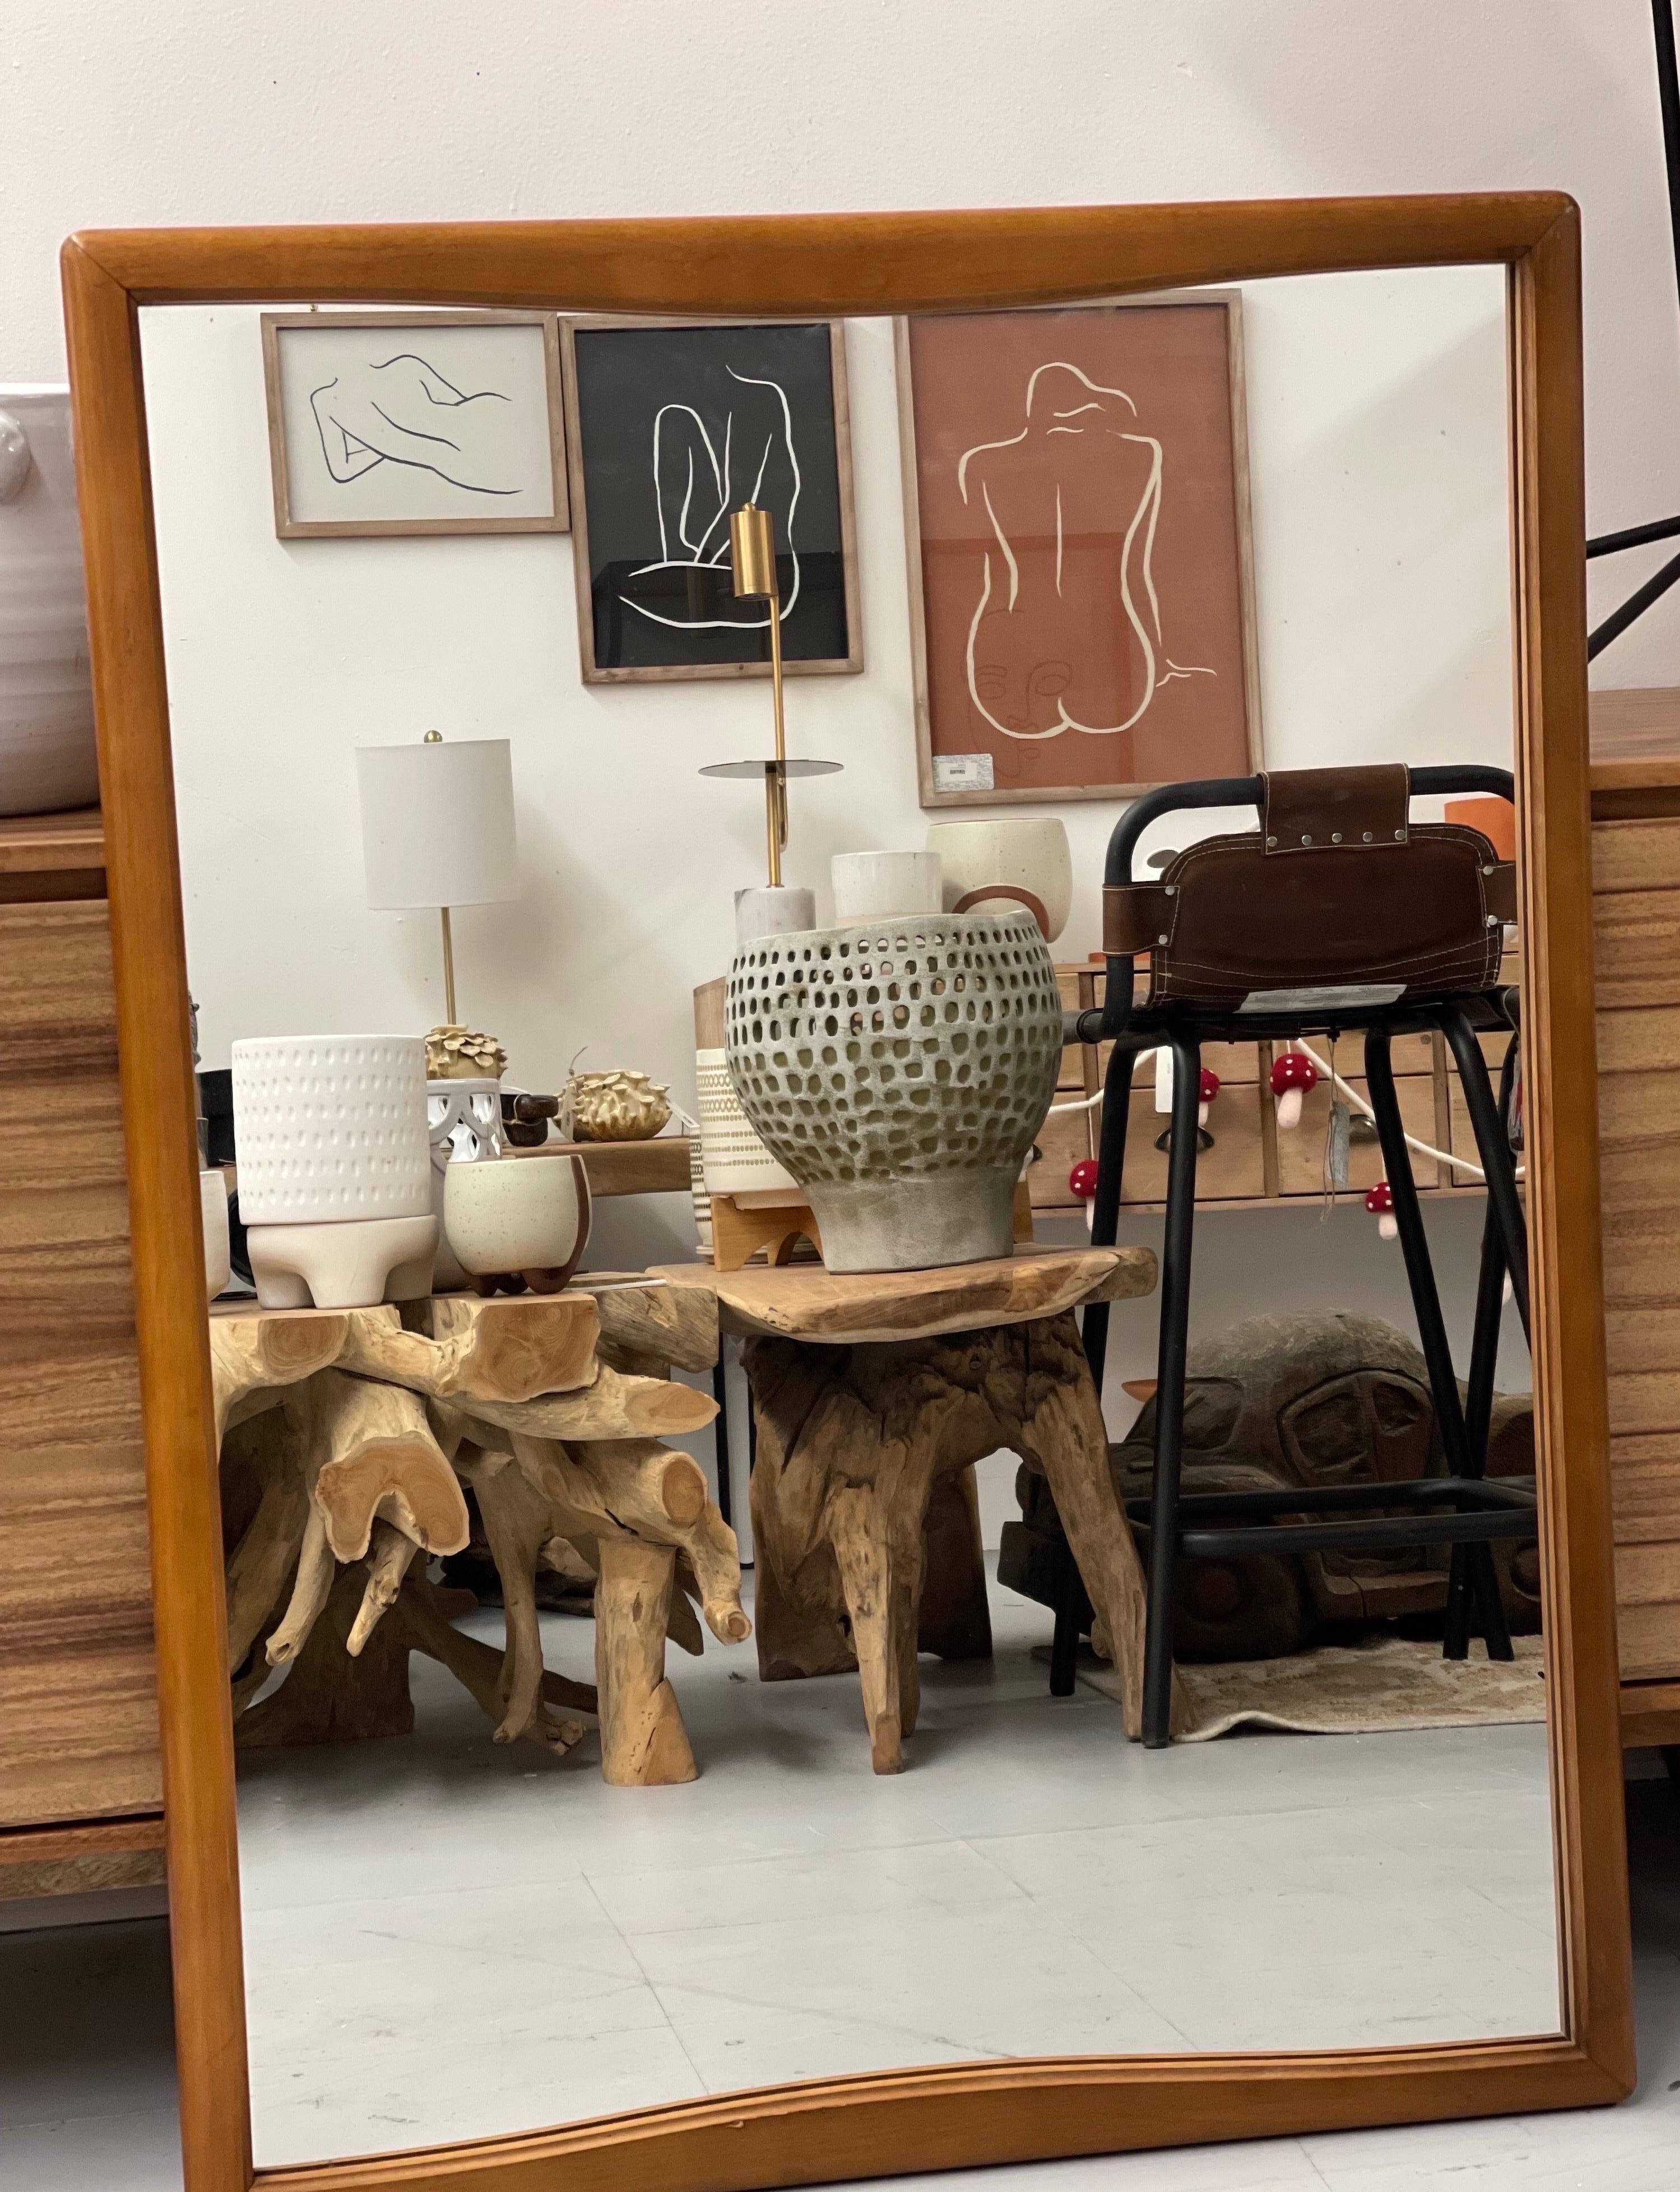 Mid-Century Modern wood framed mirror.

Dimensions. 32 W ; 42 H.